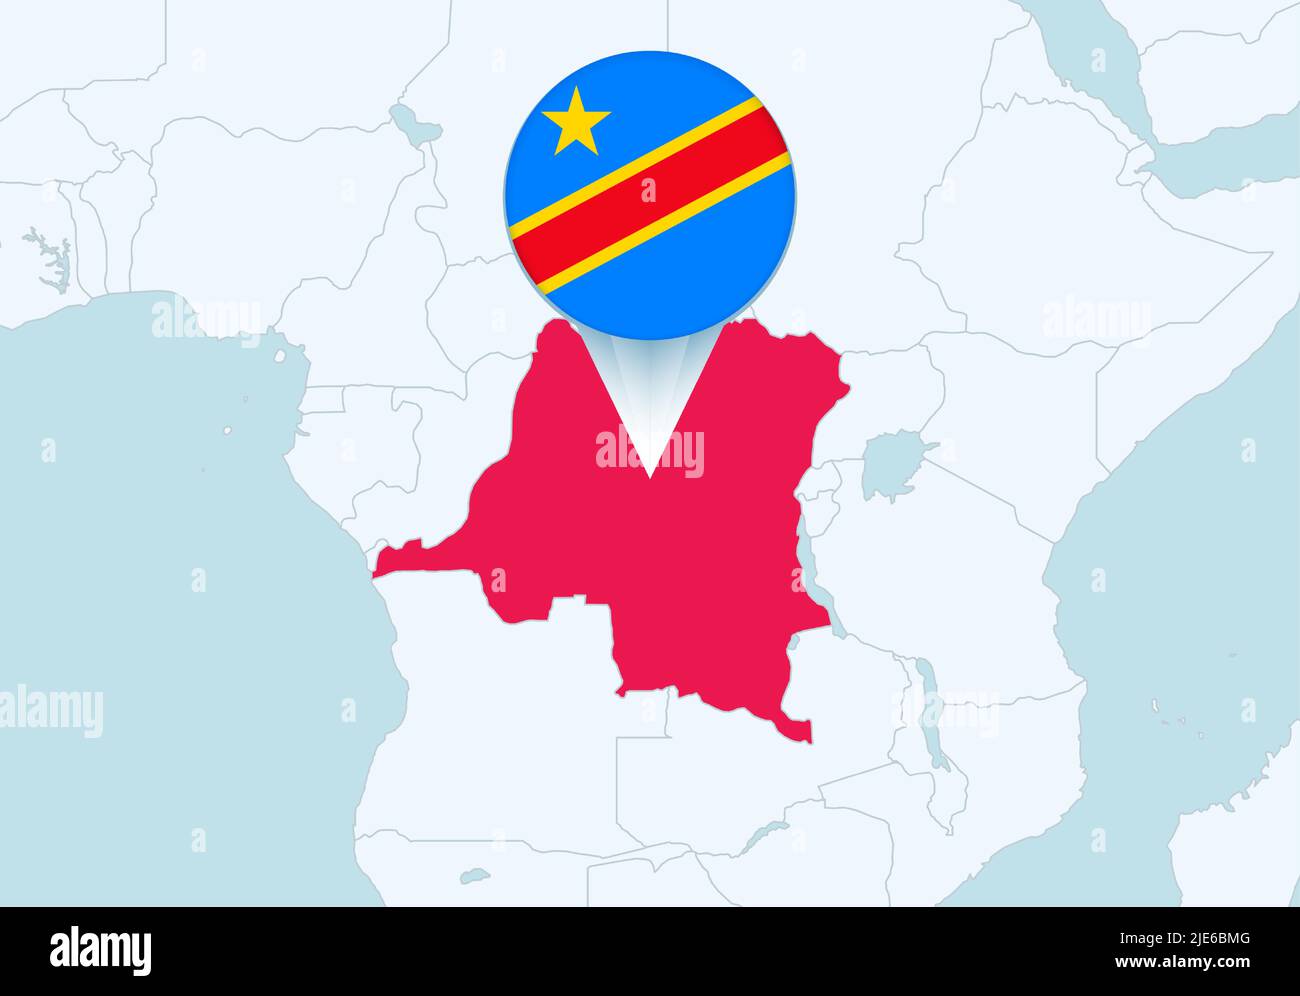 Afrique avec une carte sélectionnée de la RD Congo et l'icône du drapeau de la RD Congo. Carte vectorielle et indicateur. Illustration de Vecteur